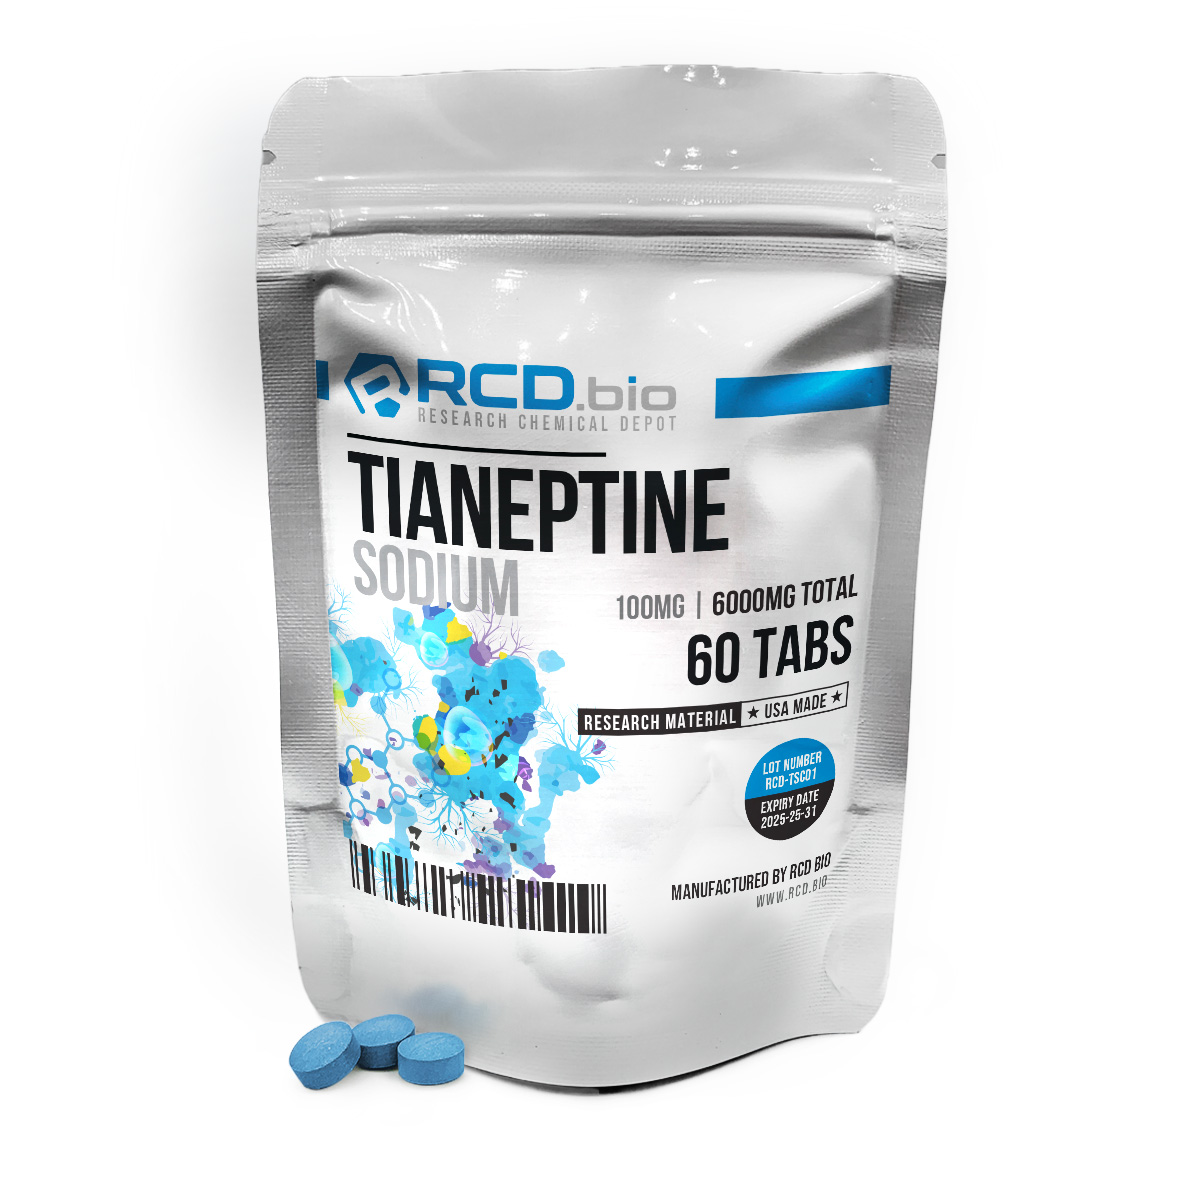 Tianeptine Sodium 100mg 60tabs-70x70_NU